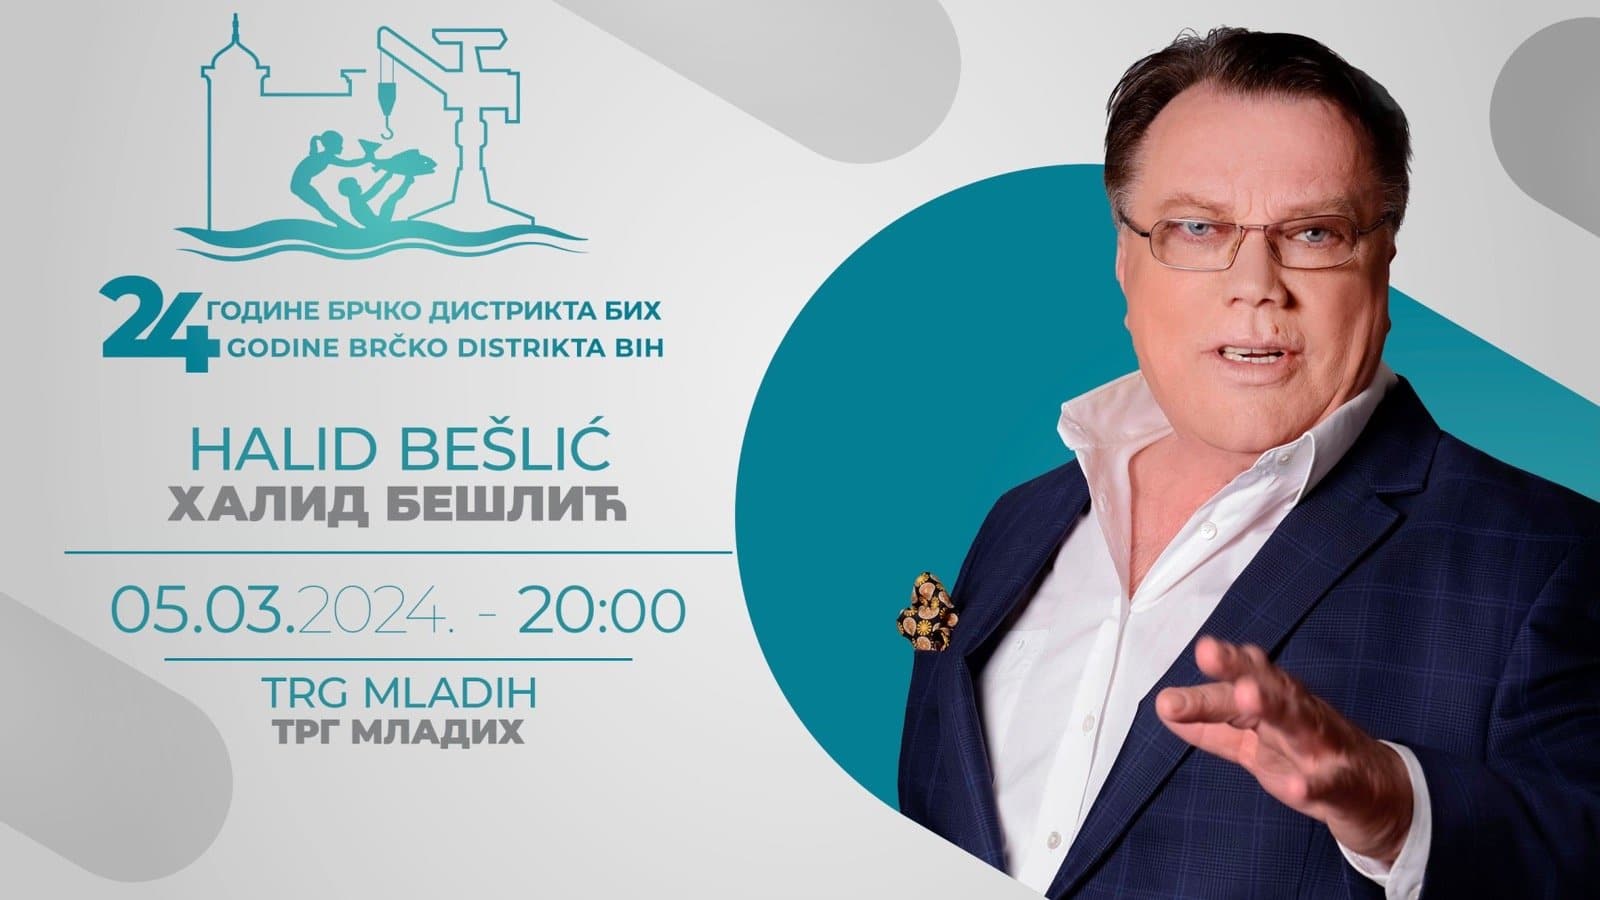 Halid Bešlić u utorak 5.3.održaće koncert u Brčkom